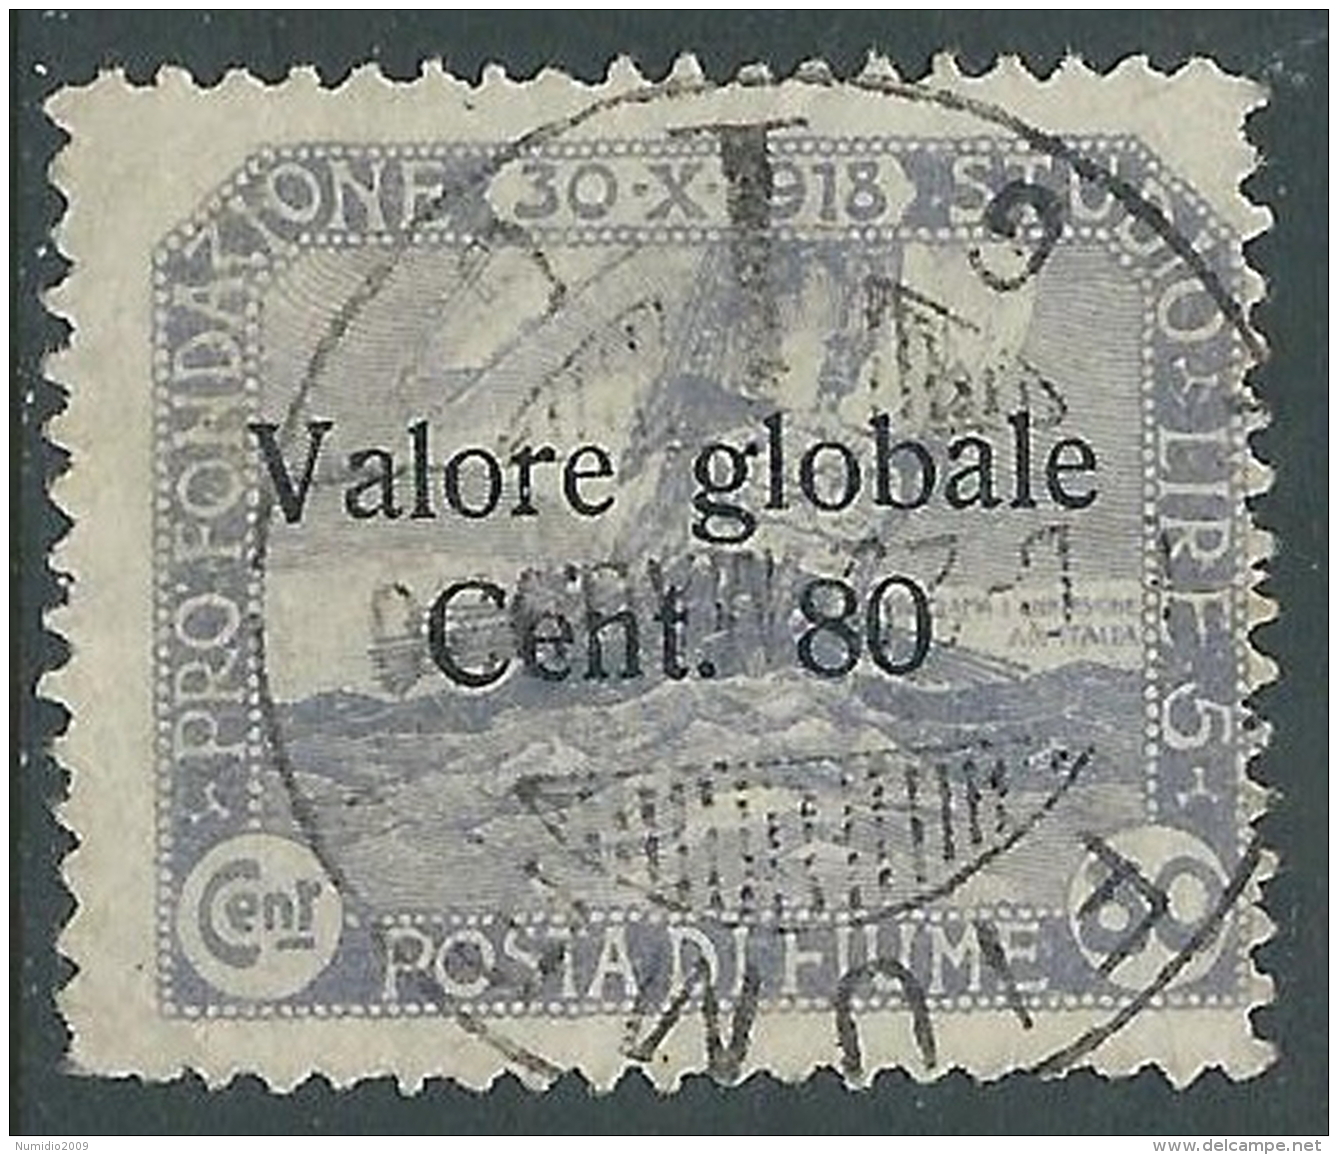 1920 FIUME USATO VALORE GLOBALE 80 CENT - P57-6 - Fiume